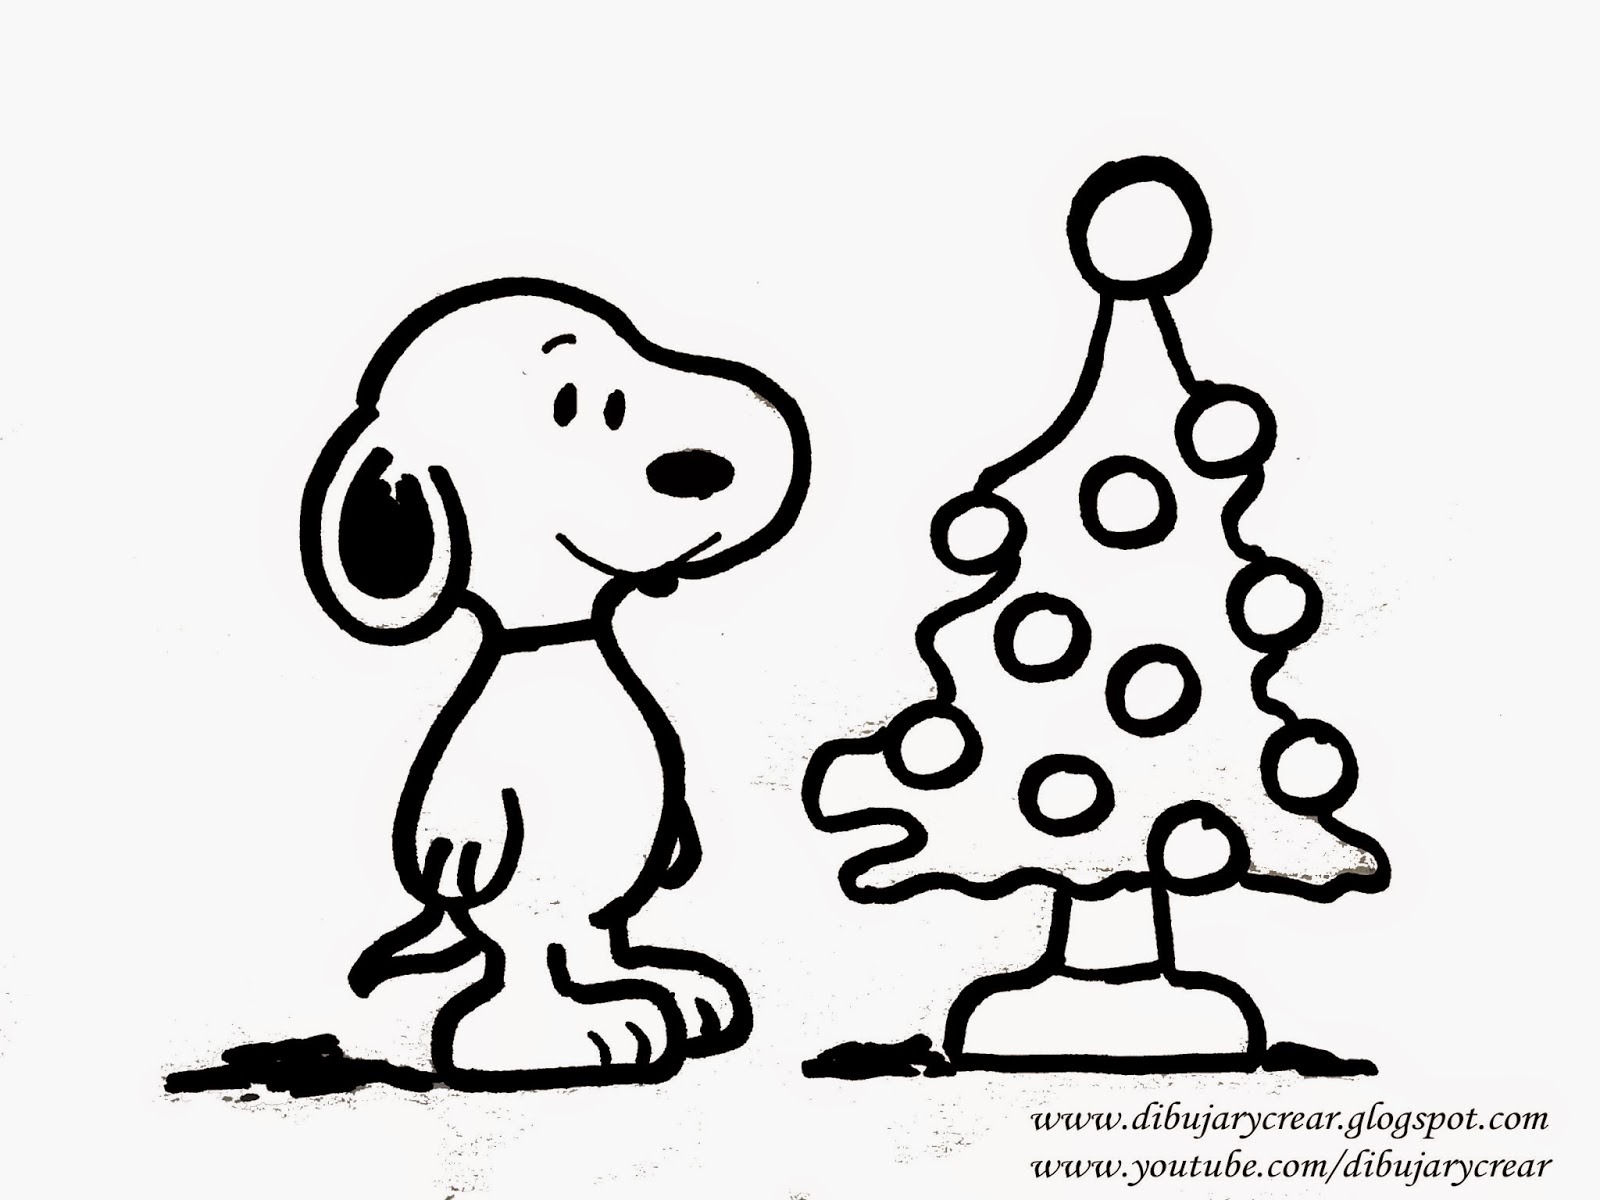 Dibujar y Crear: Especial Navidad: Como Dibujar a Snoopy y 